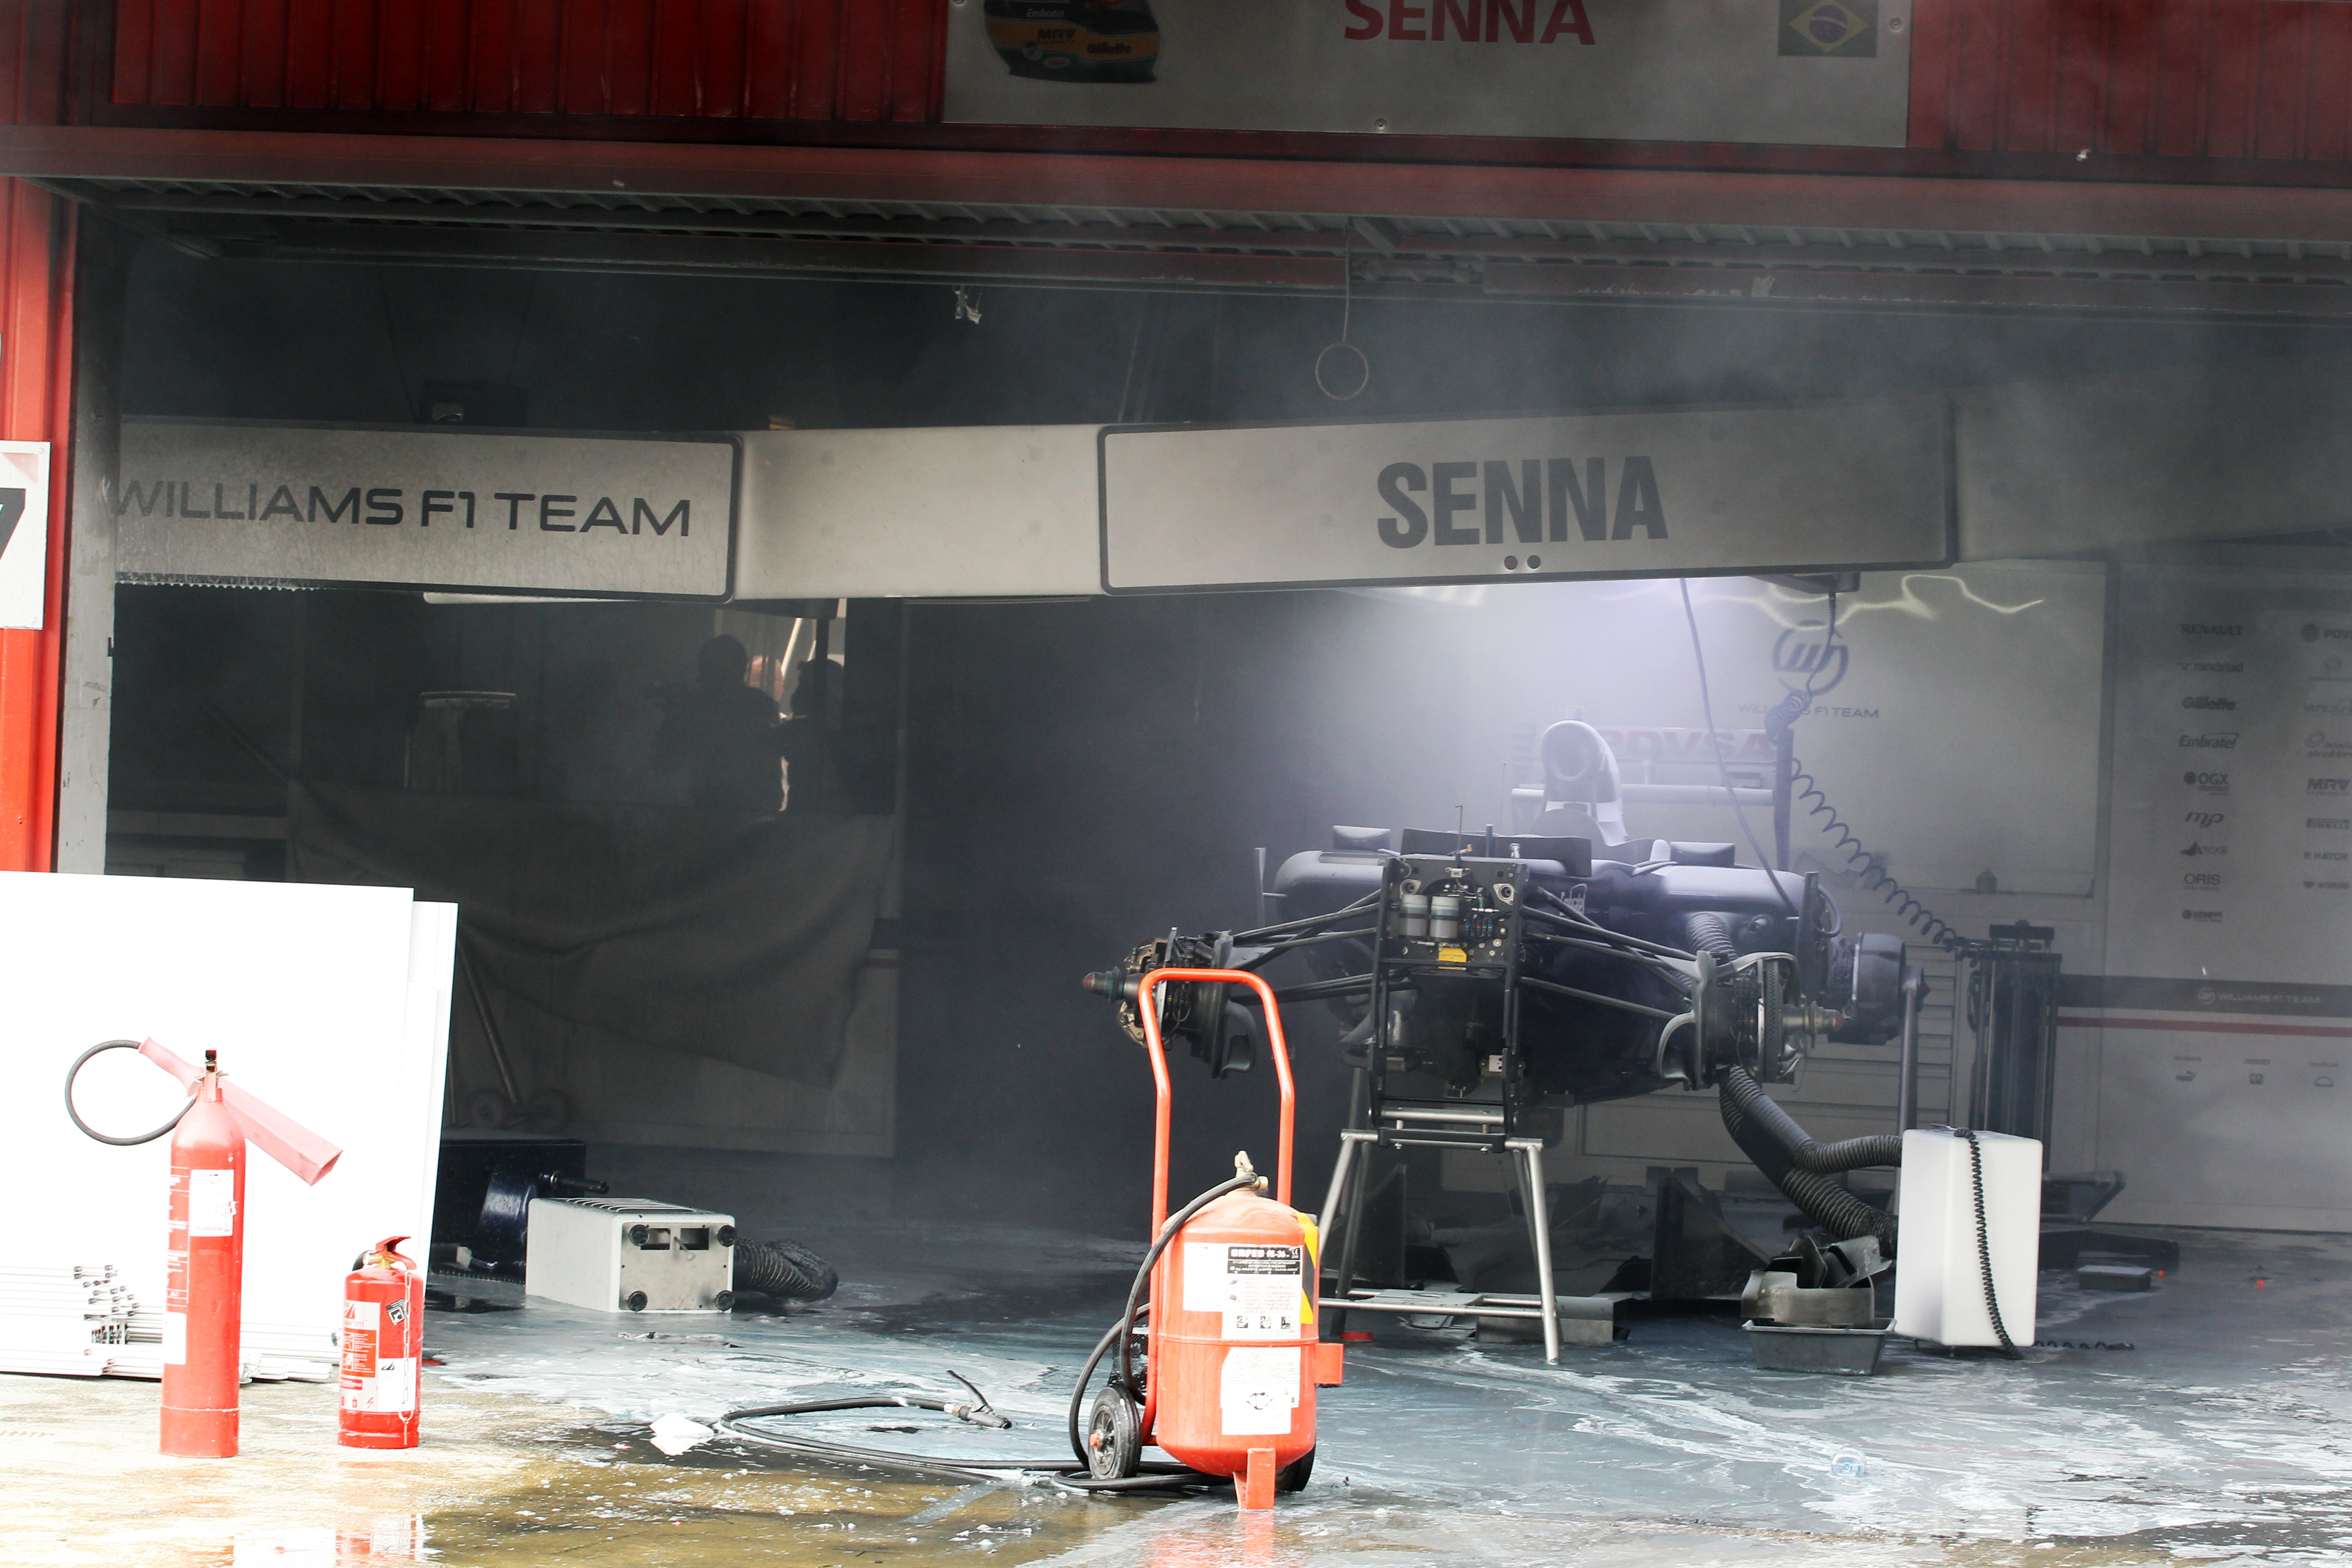 Williams ondanks brand klaar voor race in Monaco